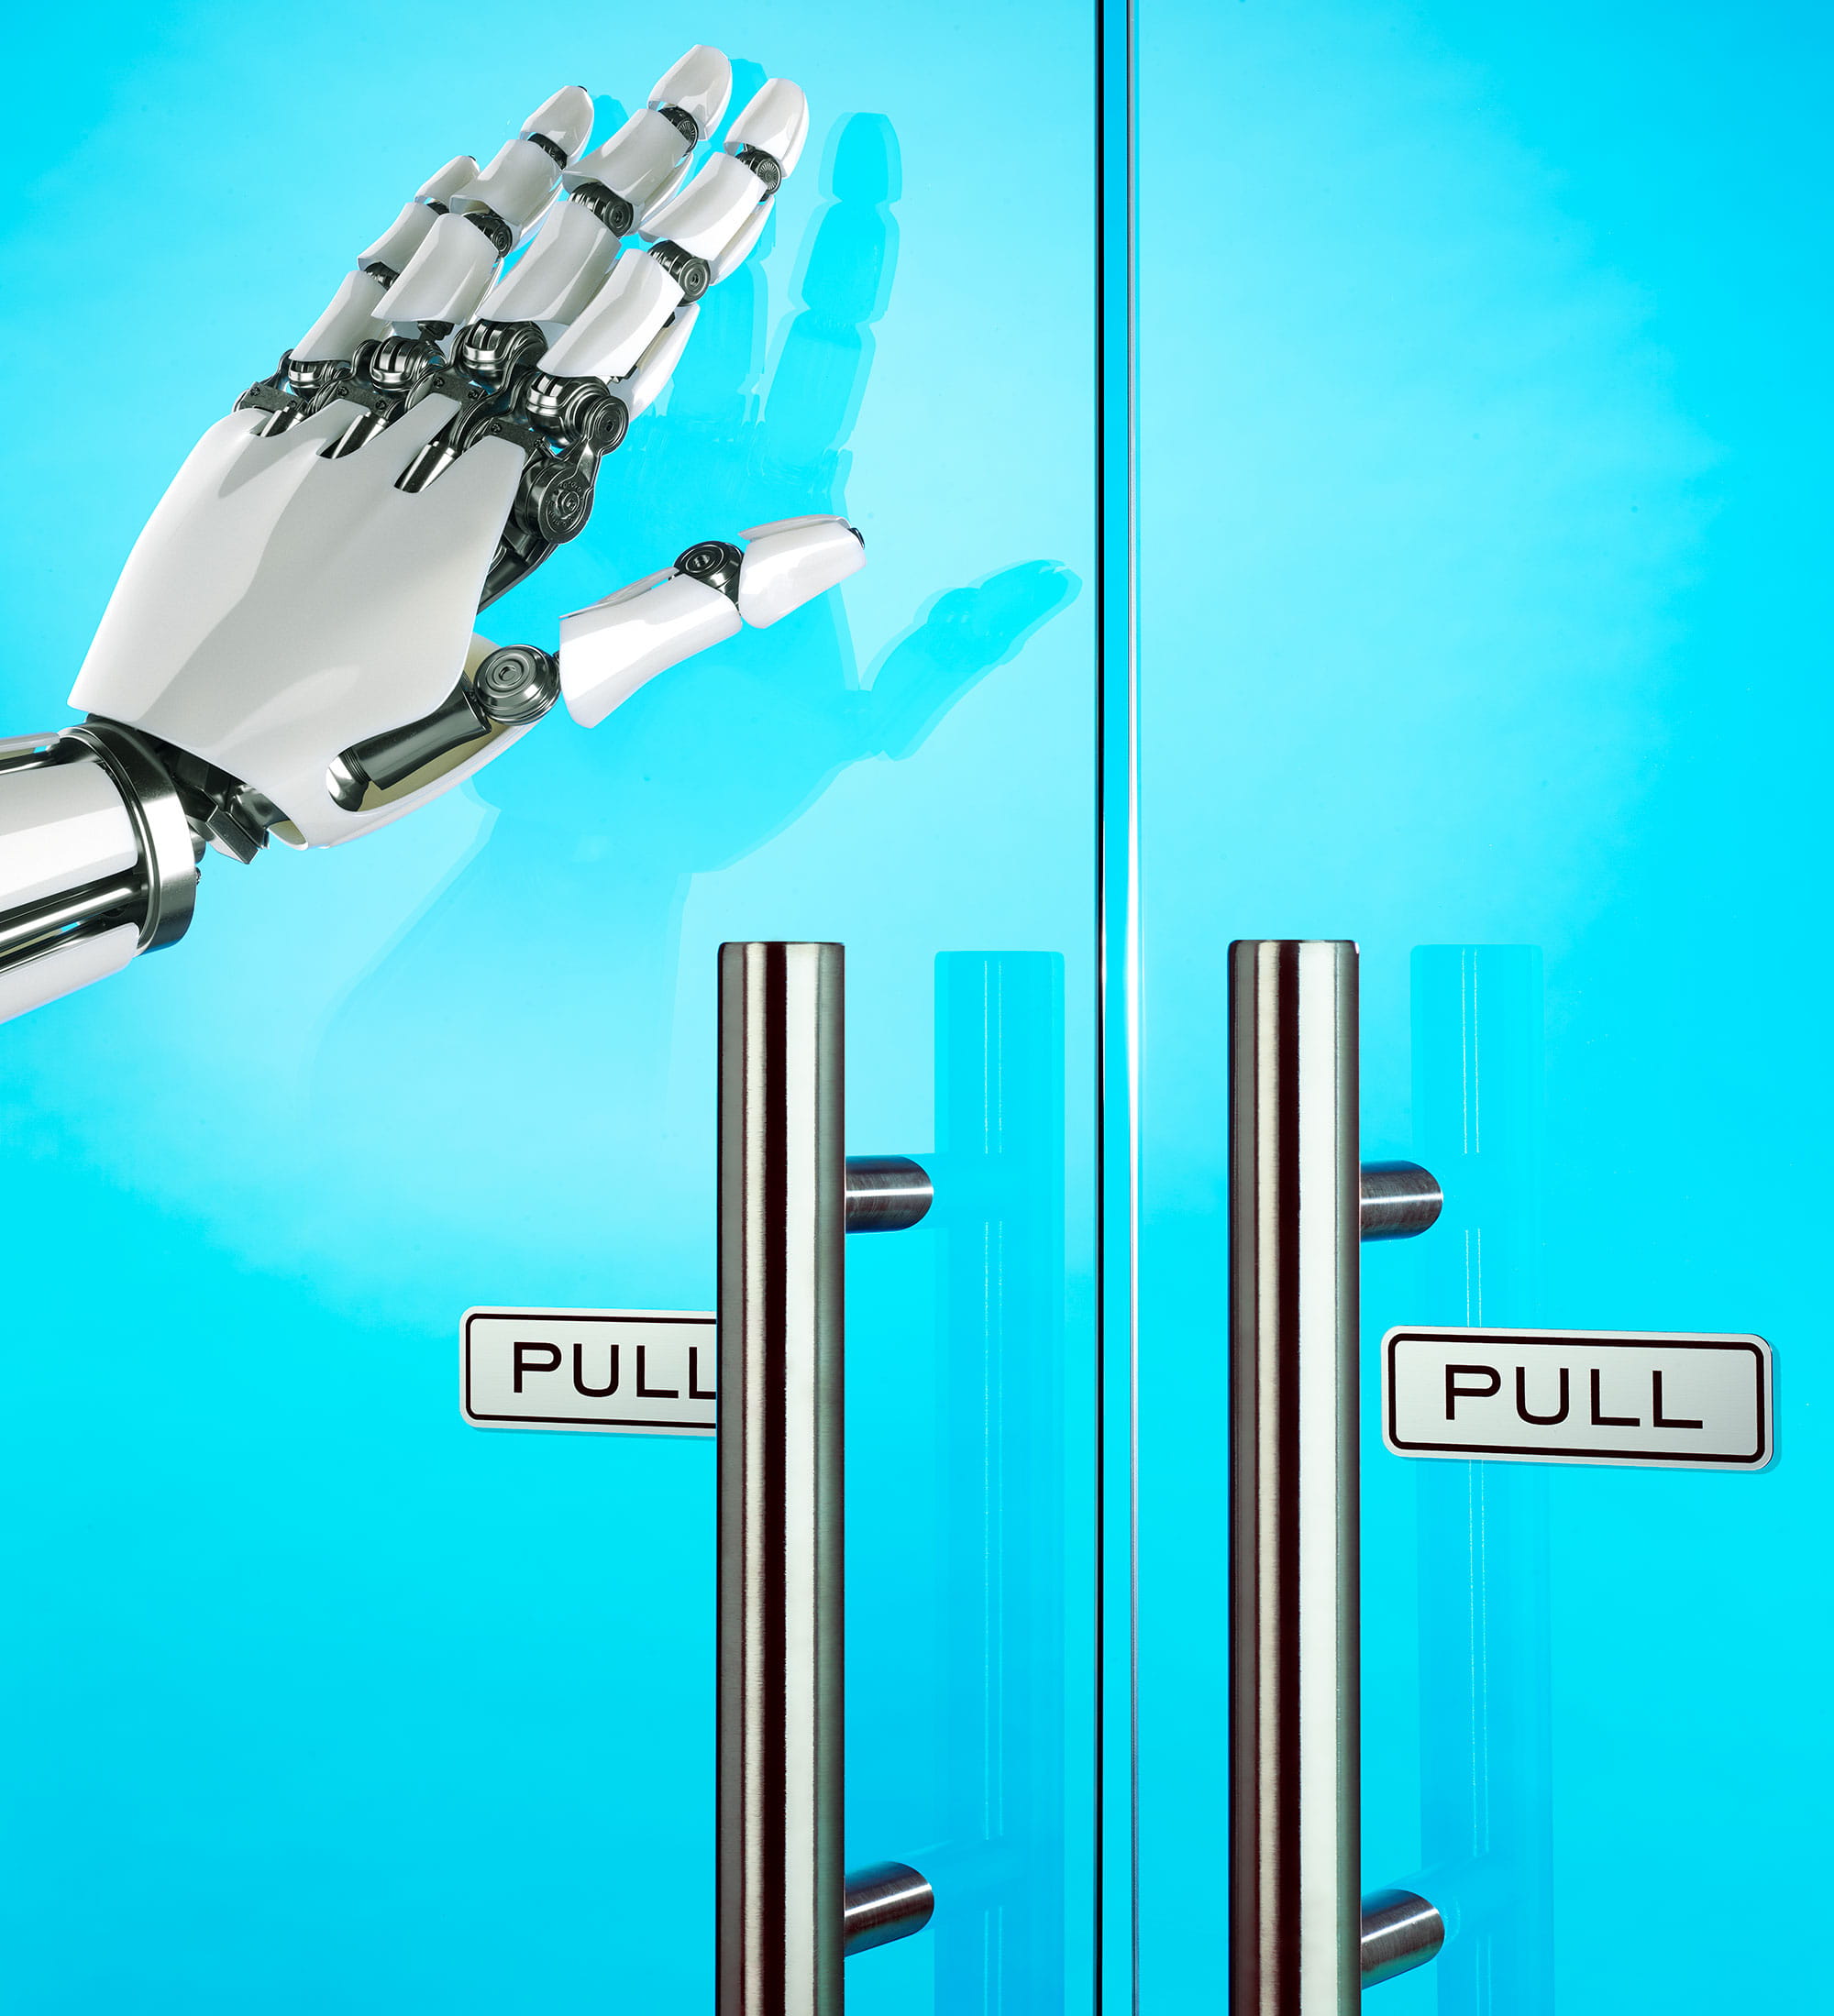 Robot hand pushing open a blue door